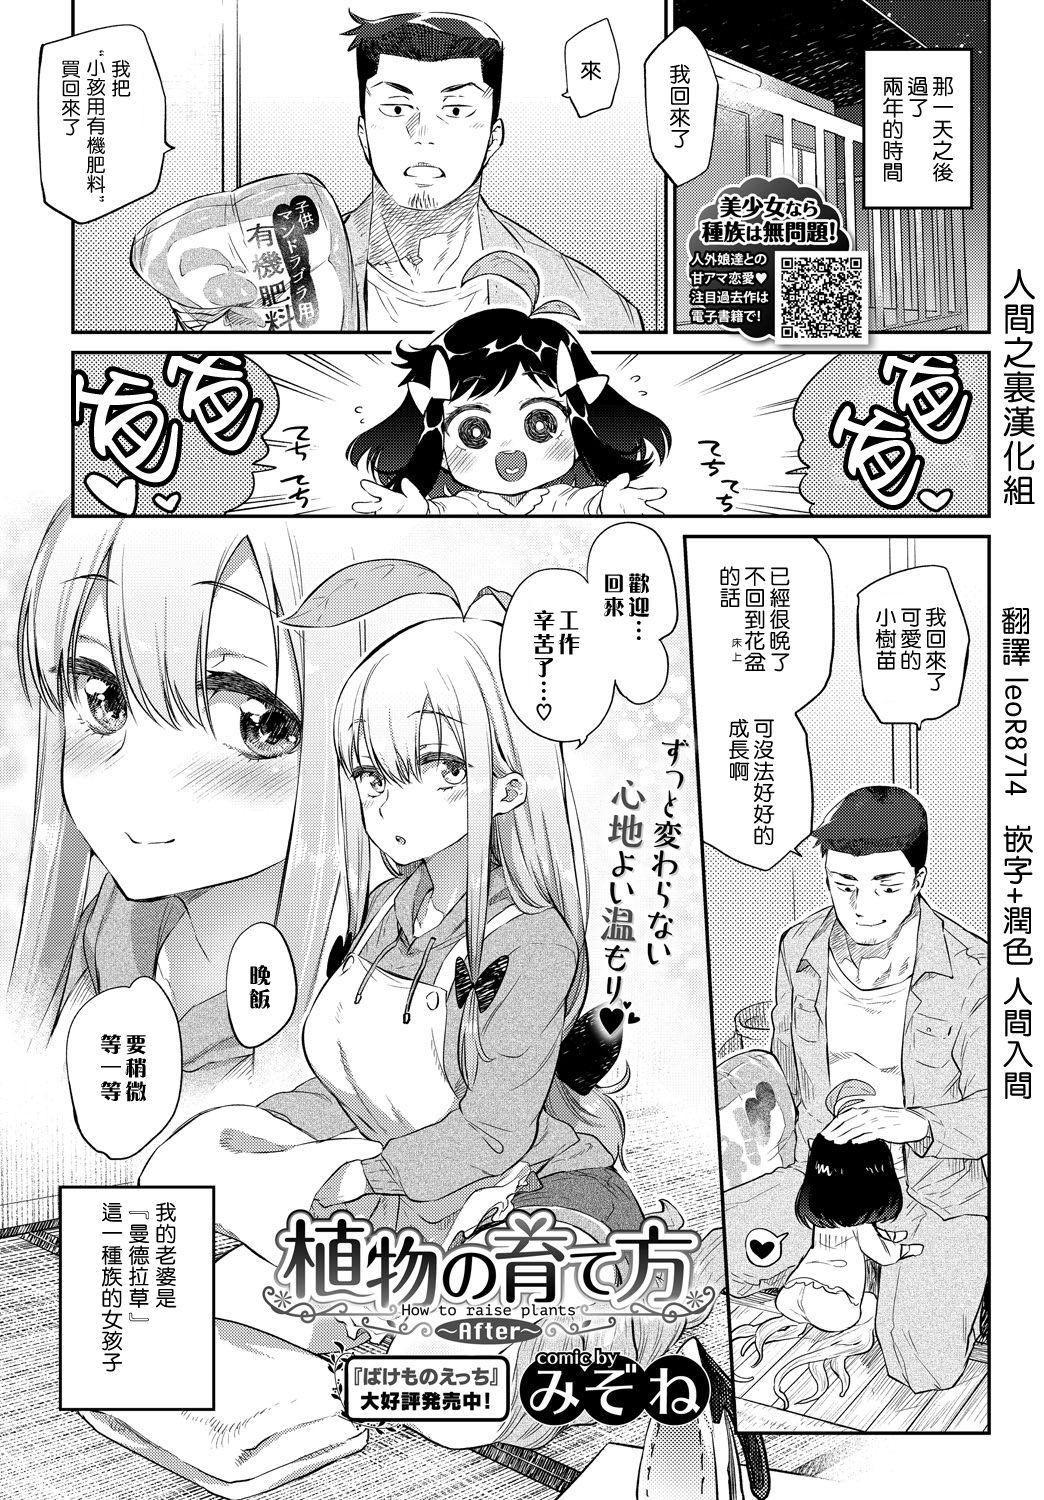 Esposa Shokubutsu no Sodatekata Jav - Page 1